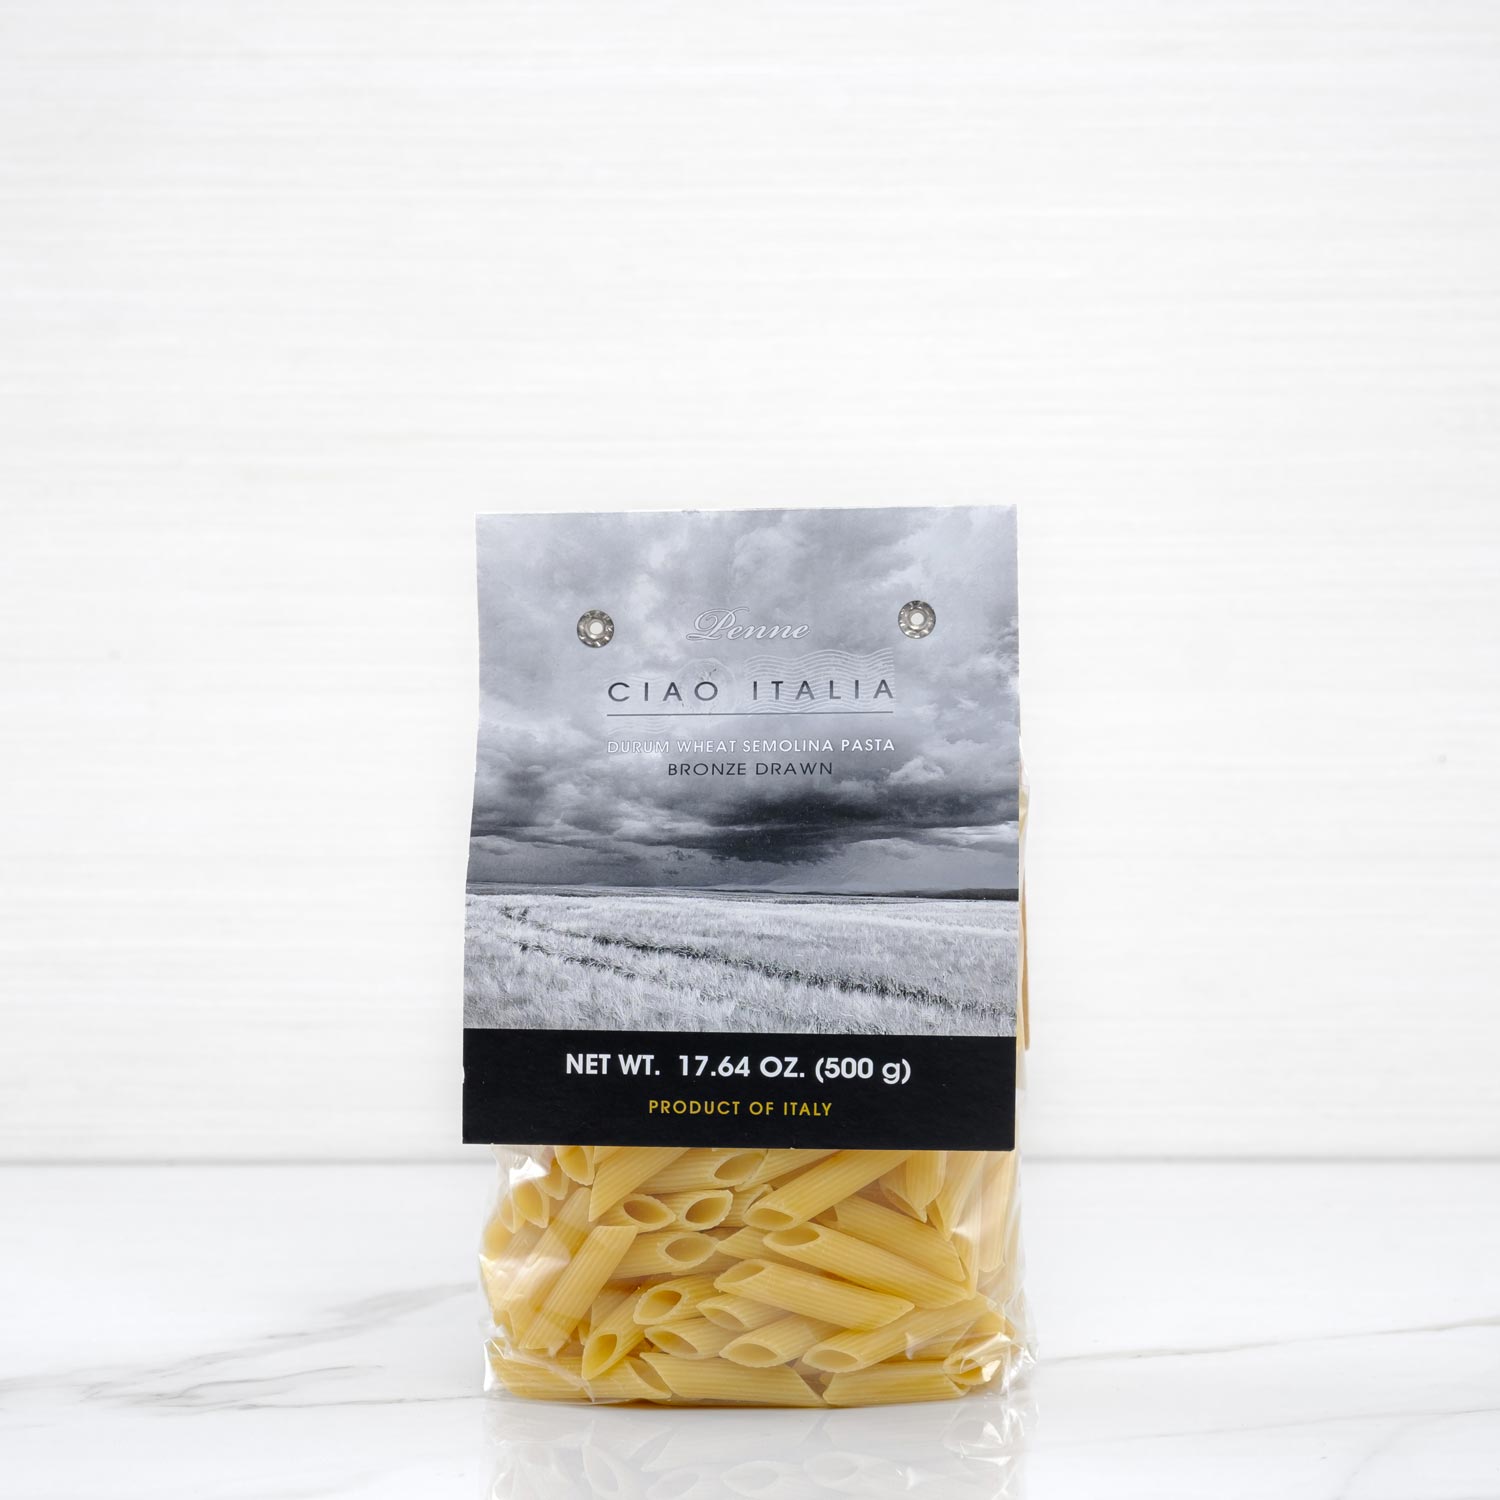 Penne Rigate - Italian durum wheat pasta